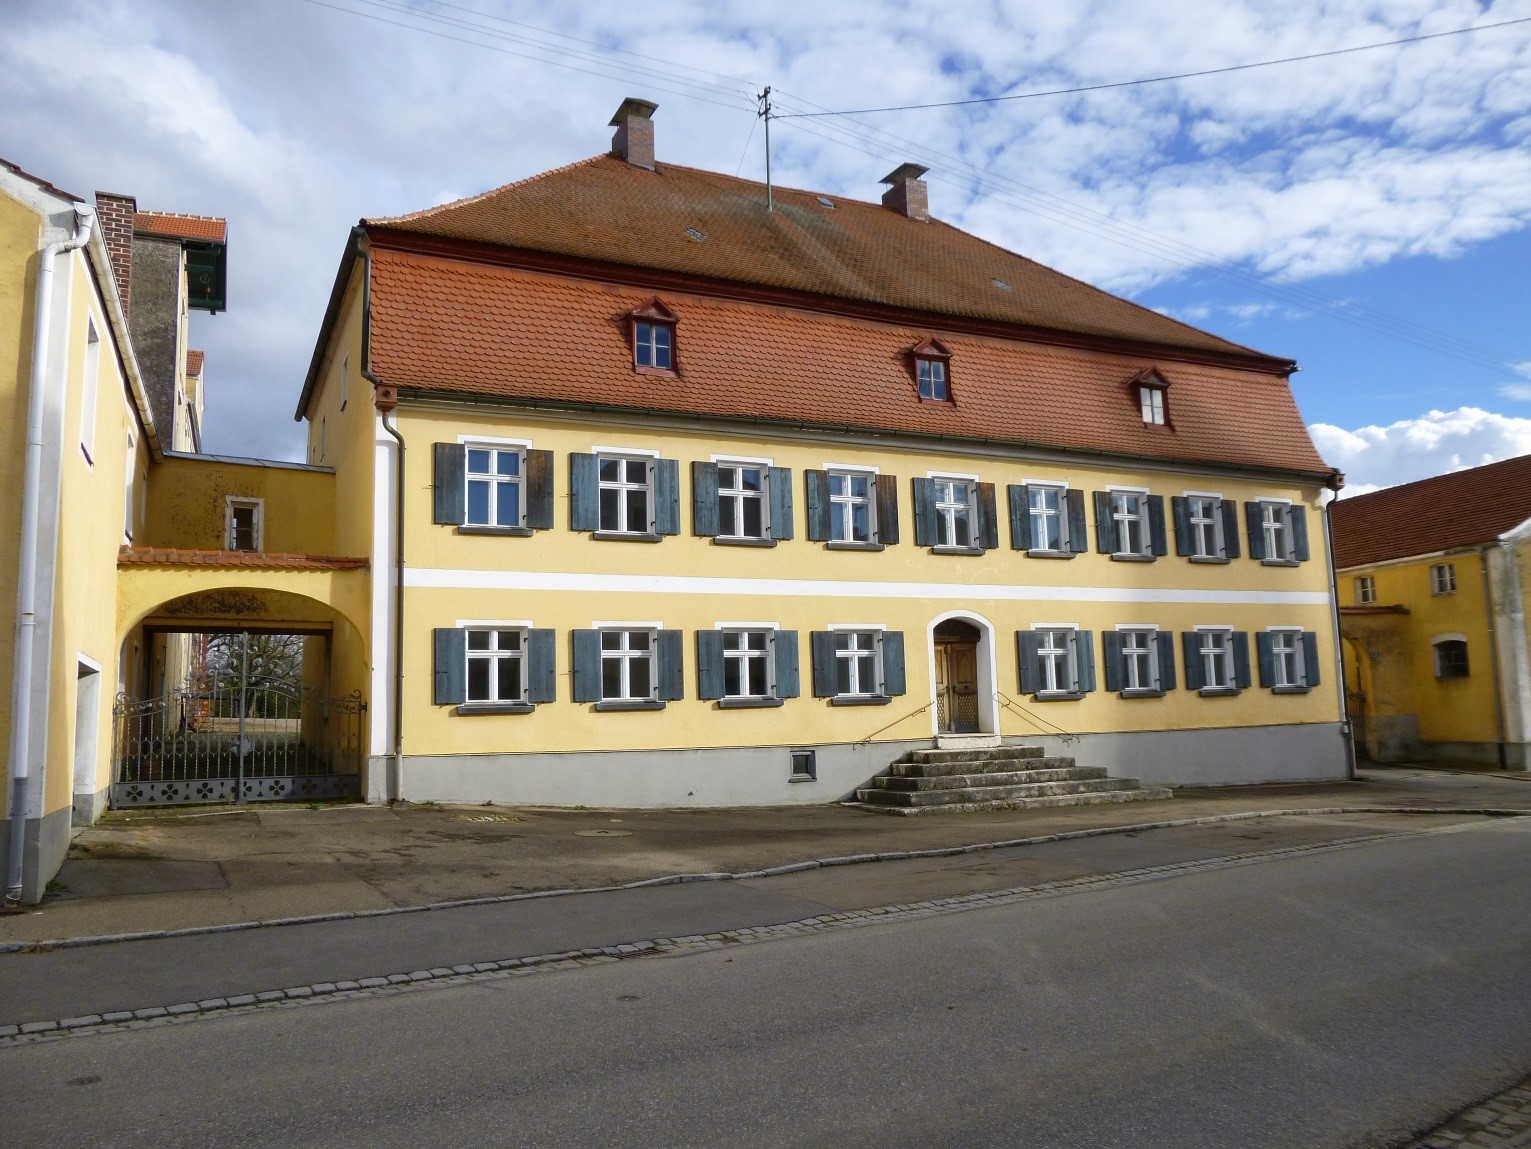 Das barocke Hauptgebäude mit Inschrift N.W. 1774 (Nicolaus Winhardt) vermutlich der Erbauer des herrschaftlichen Wohnhauses - Aufnahme vor der Sanierung